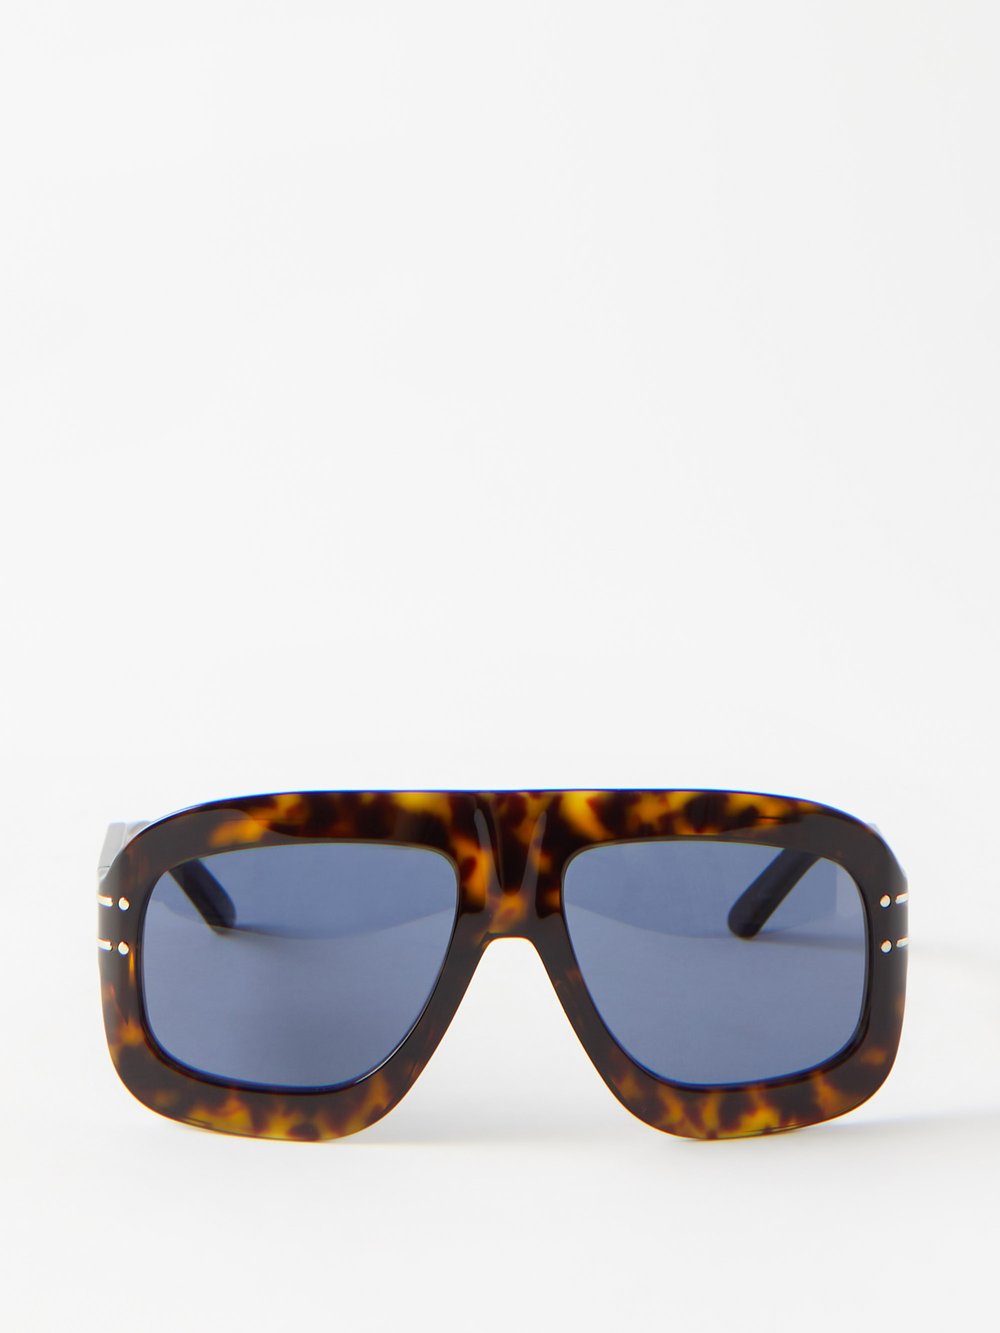 Солнцезащитные очки-авиаторы diorsignature m1u из ацетата DIOR, коричневый